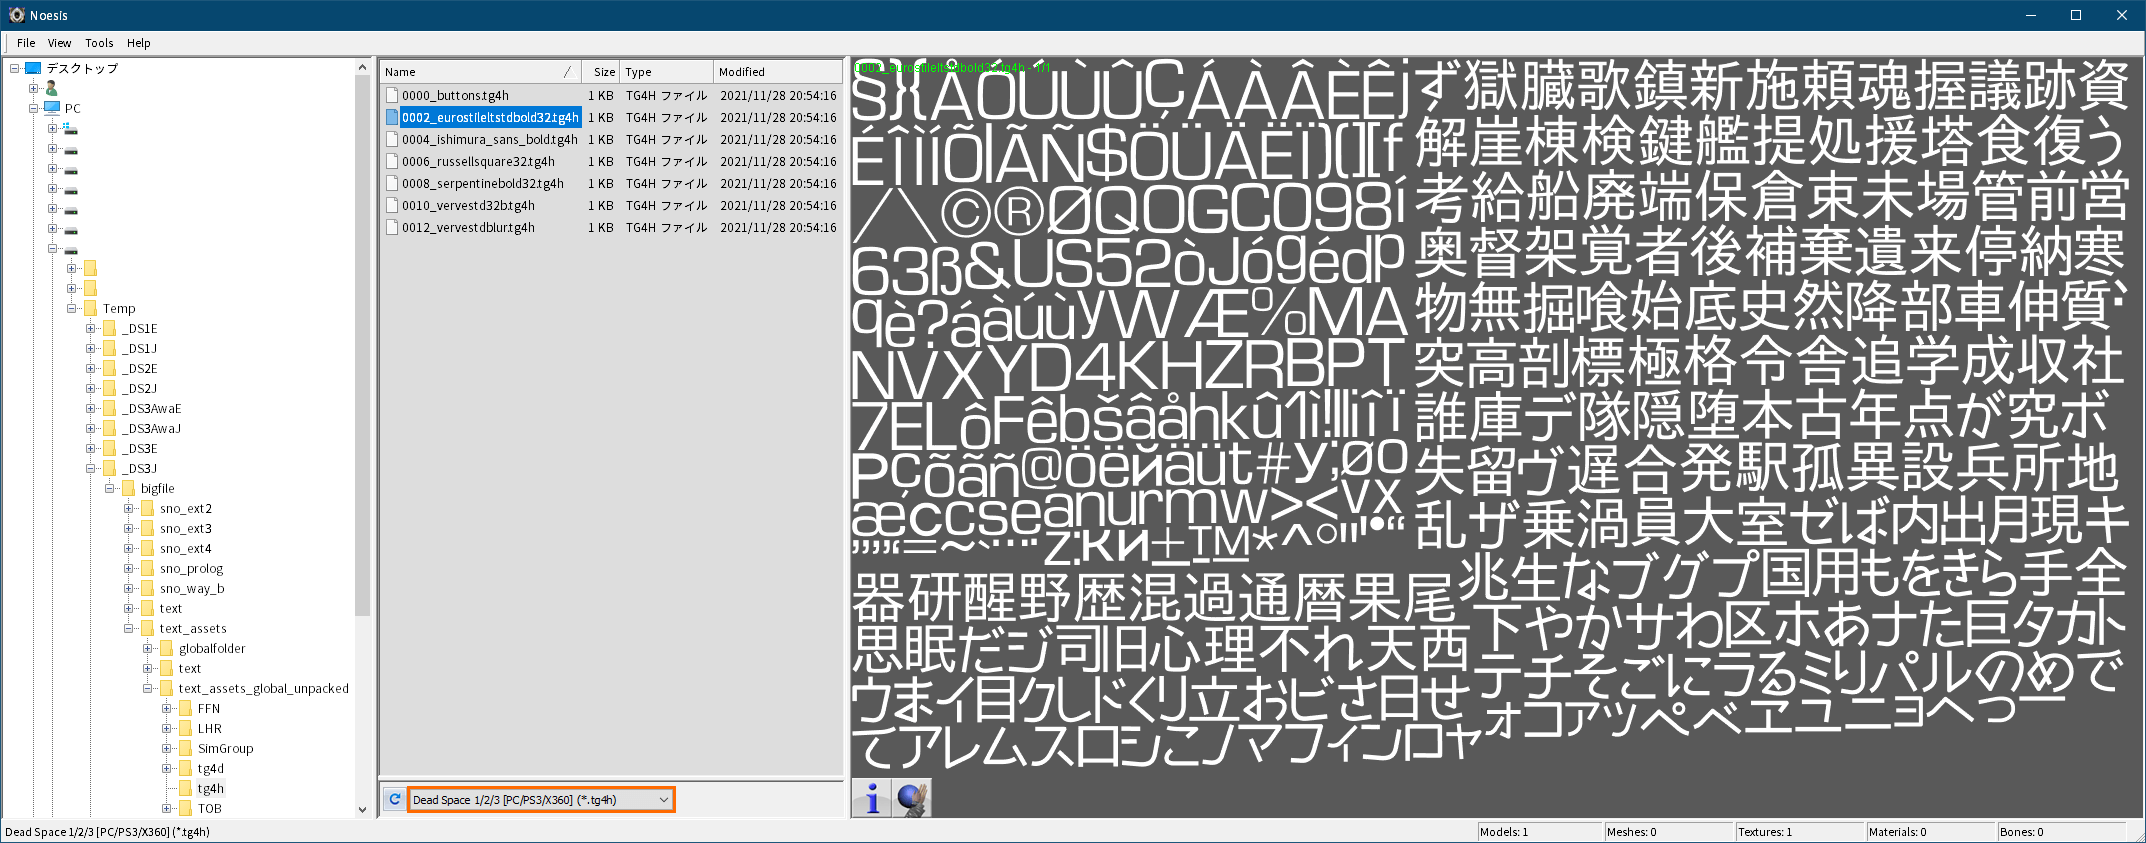 PC ゲーム旧版 DEAD SPACE シリーズ（2008～2013）日本語化ファイル解析情報、PC ゲーム DEAD SPACE 3（2013）日本語化ファイル解析メモとアンパック・解析データ公開、Noesis ツールを使ったビットマップフォント（tg4h と tg4g ファイル）エクスポート方法、Noesis をダウンロードして展開・解凍、XeNTaX からダウンロードした tex_DeadSpace123_PC_PS3_X360_tg4h.py ファイルを plugins\python フォルダに配置後、Noesis.exe か Noesis64.exe を実行して起動、Noesis が起動したらアンパックした text_assets_global.str の tg4h フォルダに移動、画像中央下にあるドロップダウンリストで Dead Space 1/2/3 [PC/PS3/X360] (*.tg4h)が選択されている状態で tg4h ファイルをダブルクリックすると、画面右側にフォントテクスチャのプレビュー画像が表示